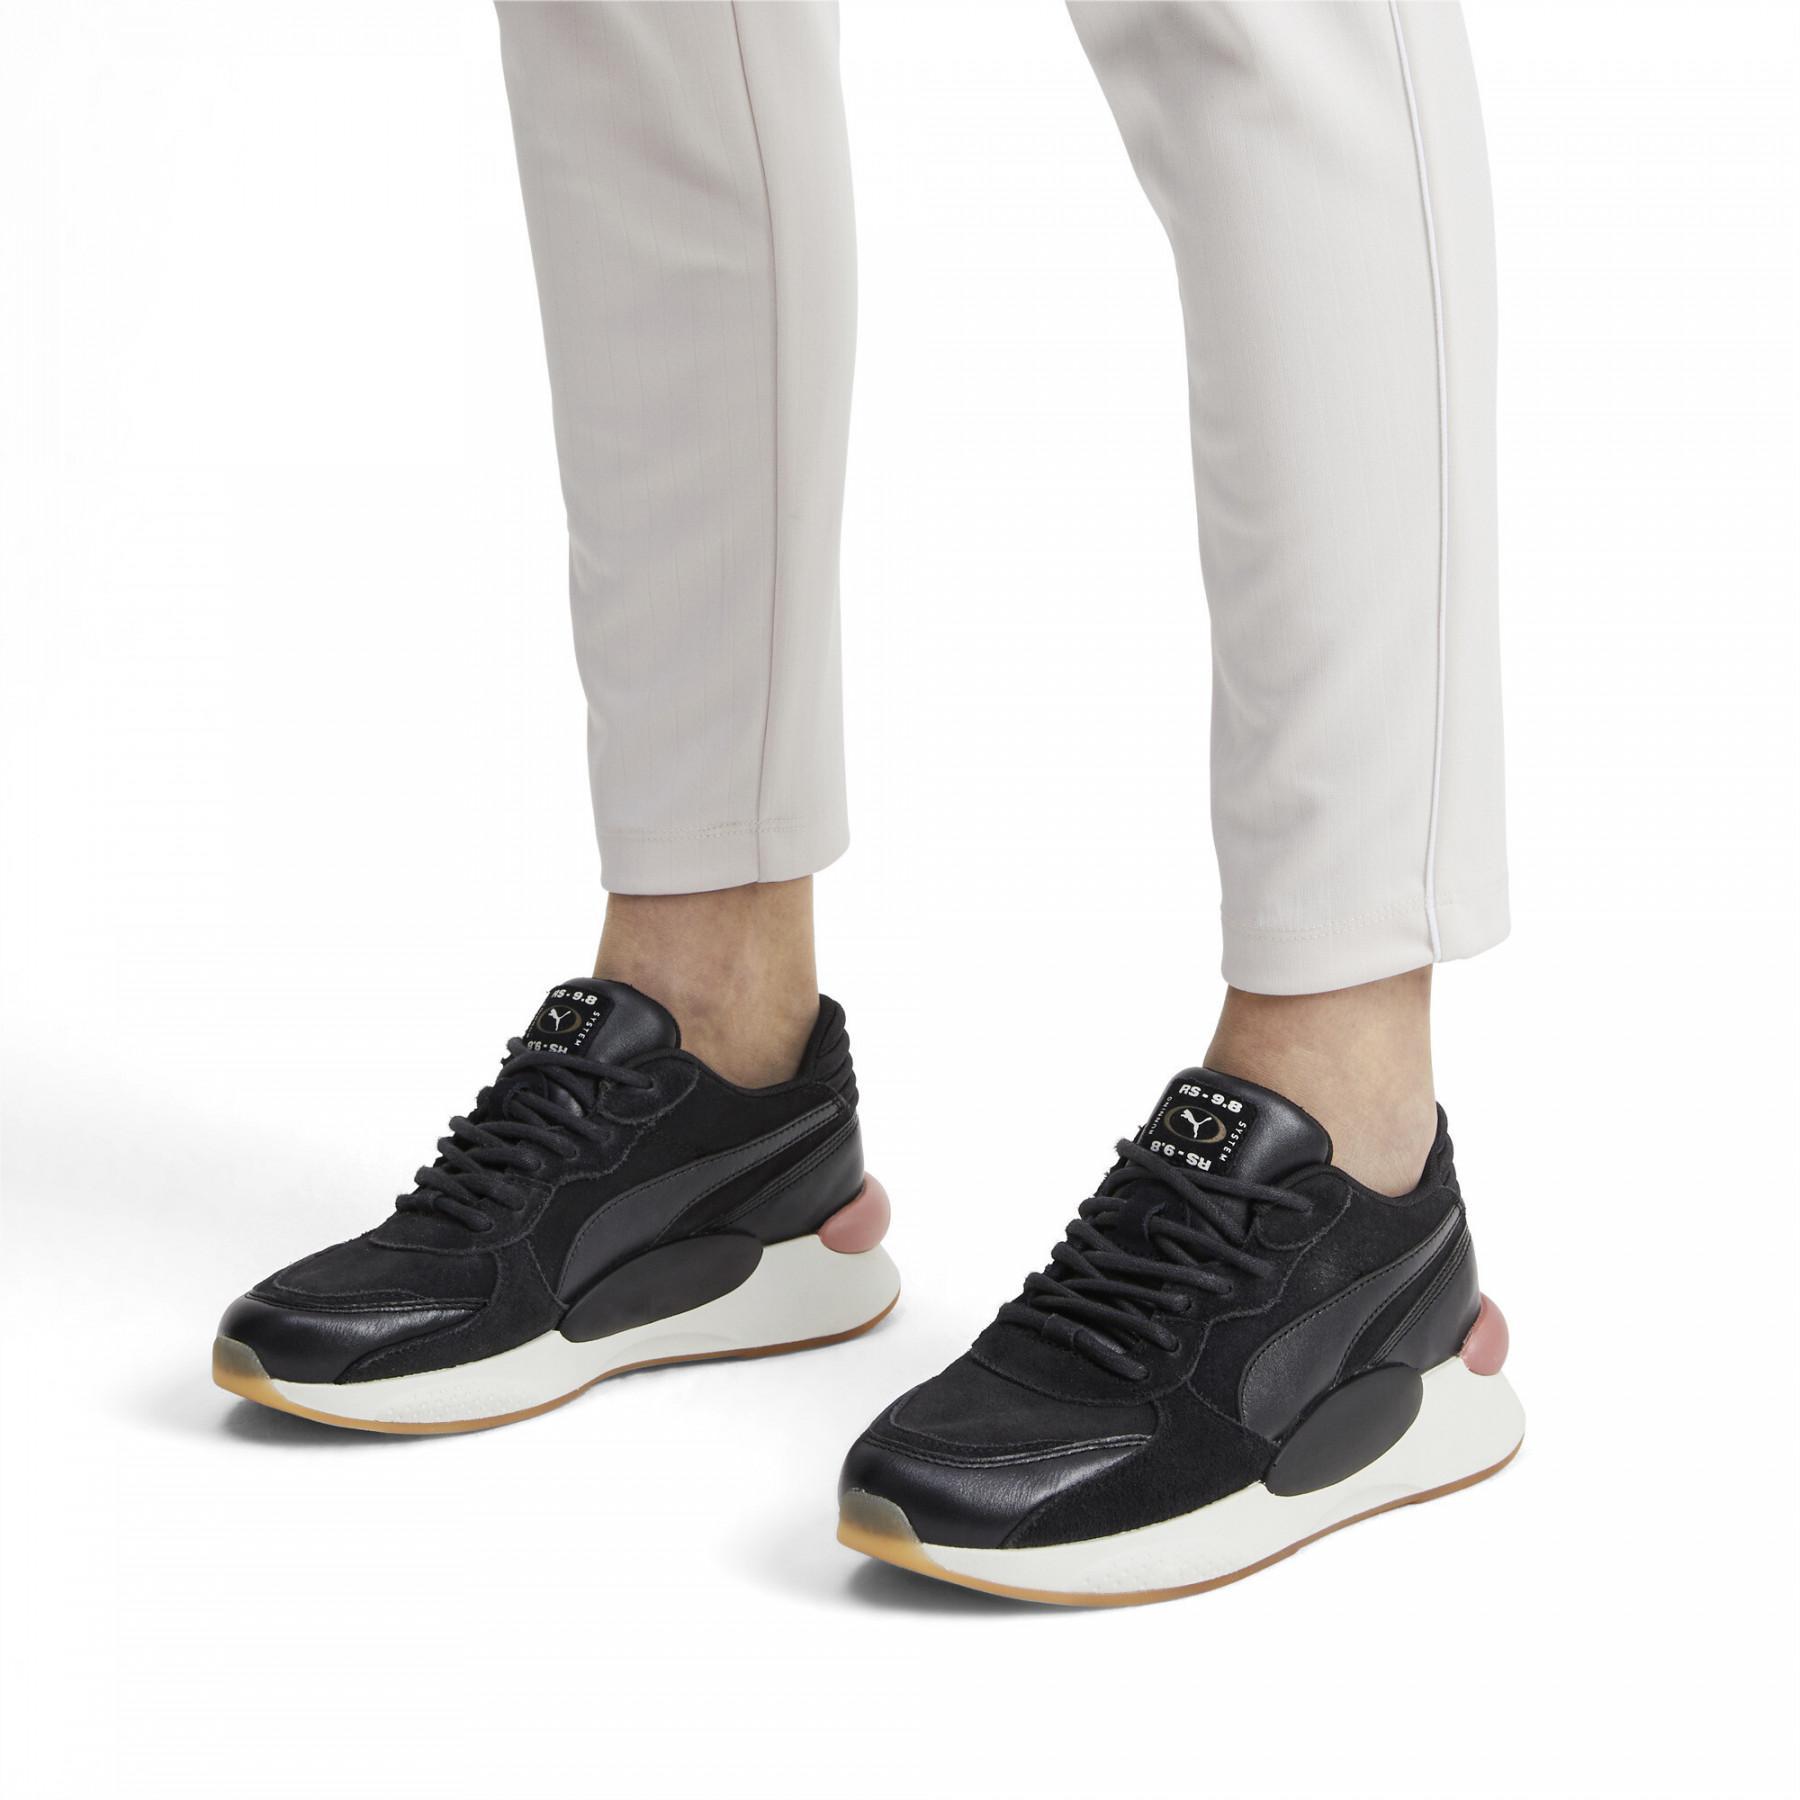 Zapatillas de deporte para mujeres Puma RS 9.8 Metallic